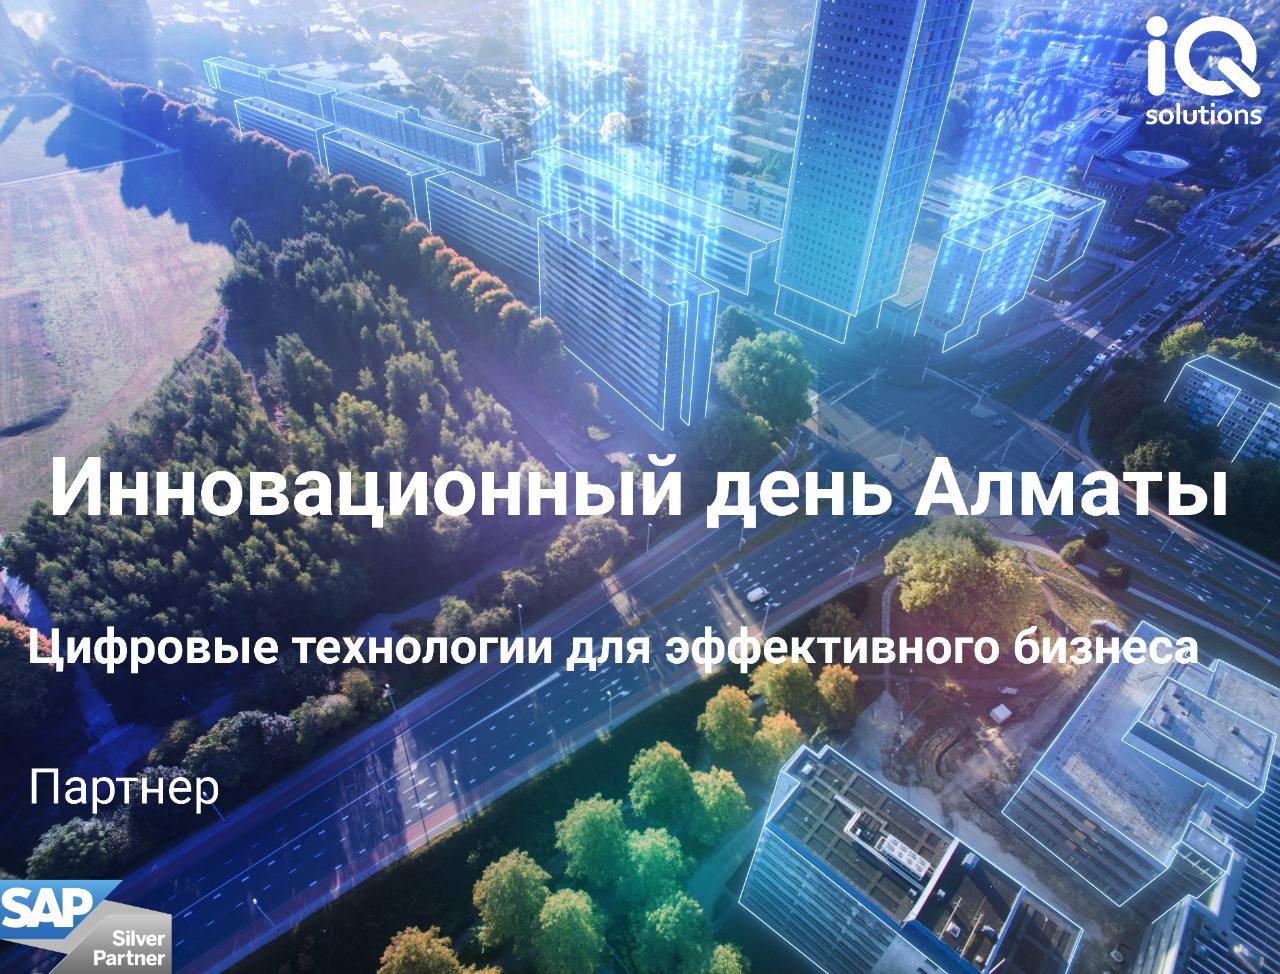 iQ-Solutions — партнер Инновационного дня в Алматы